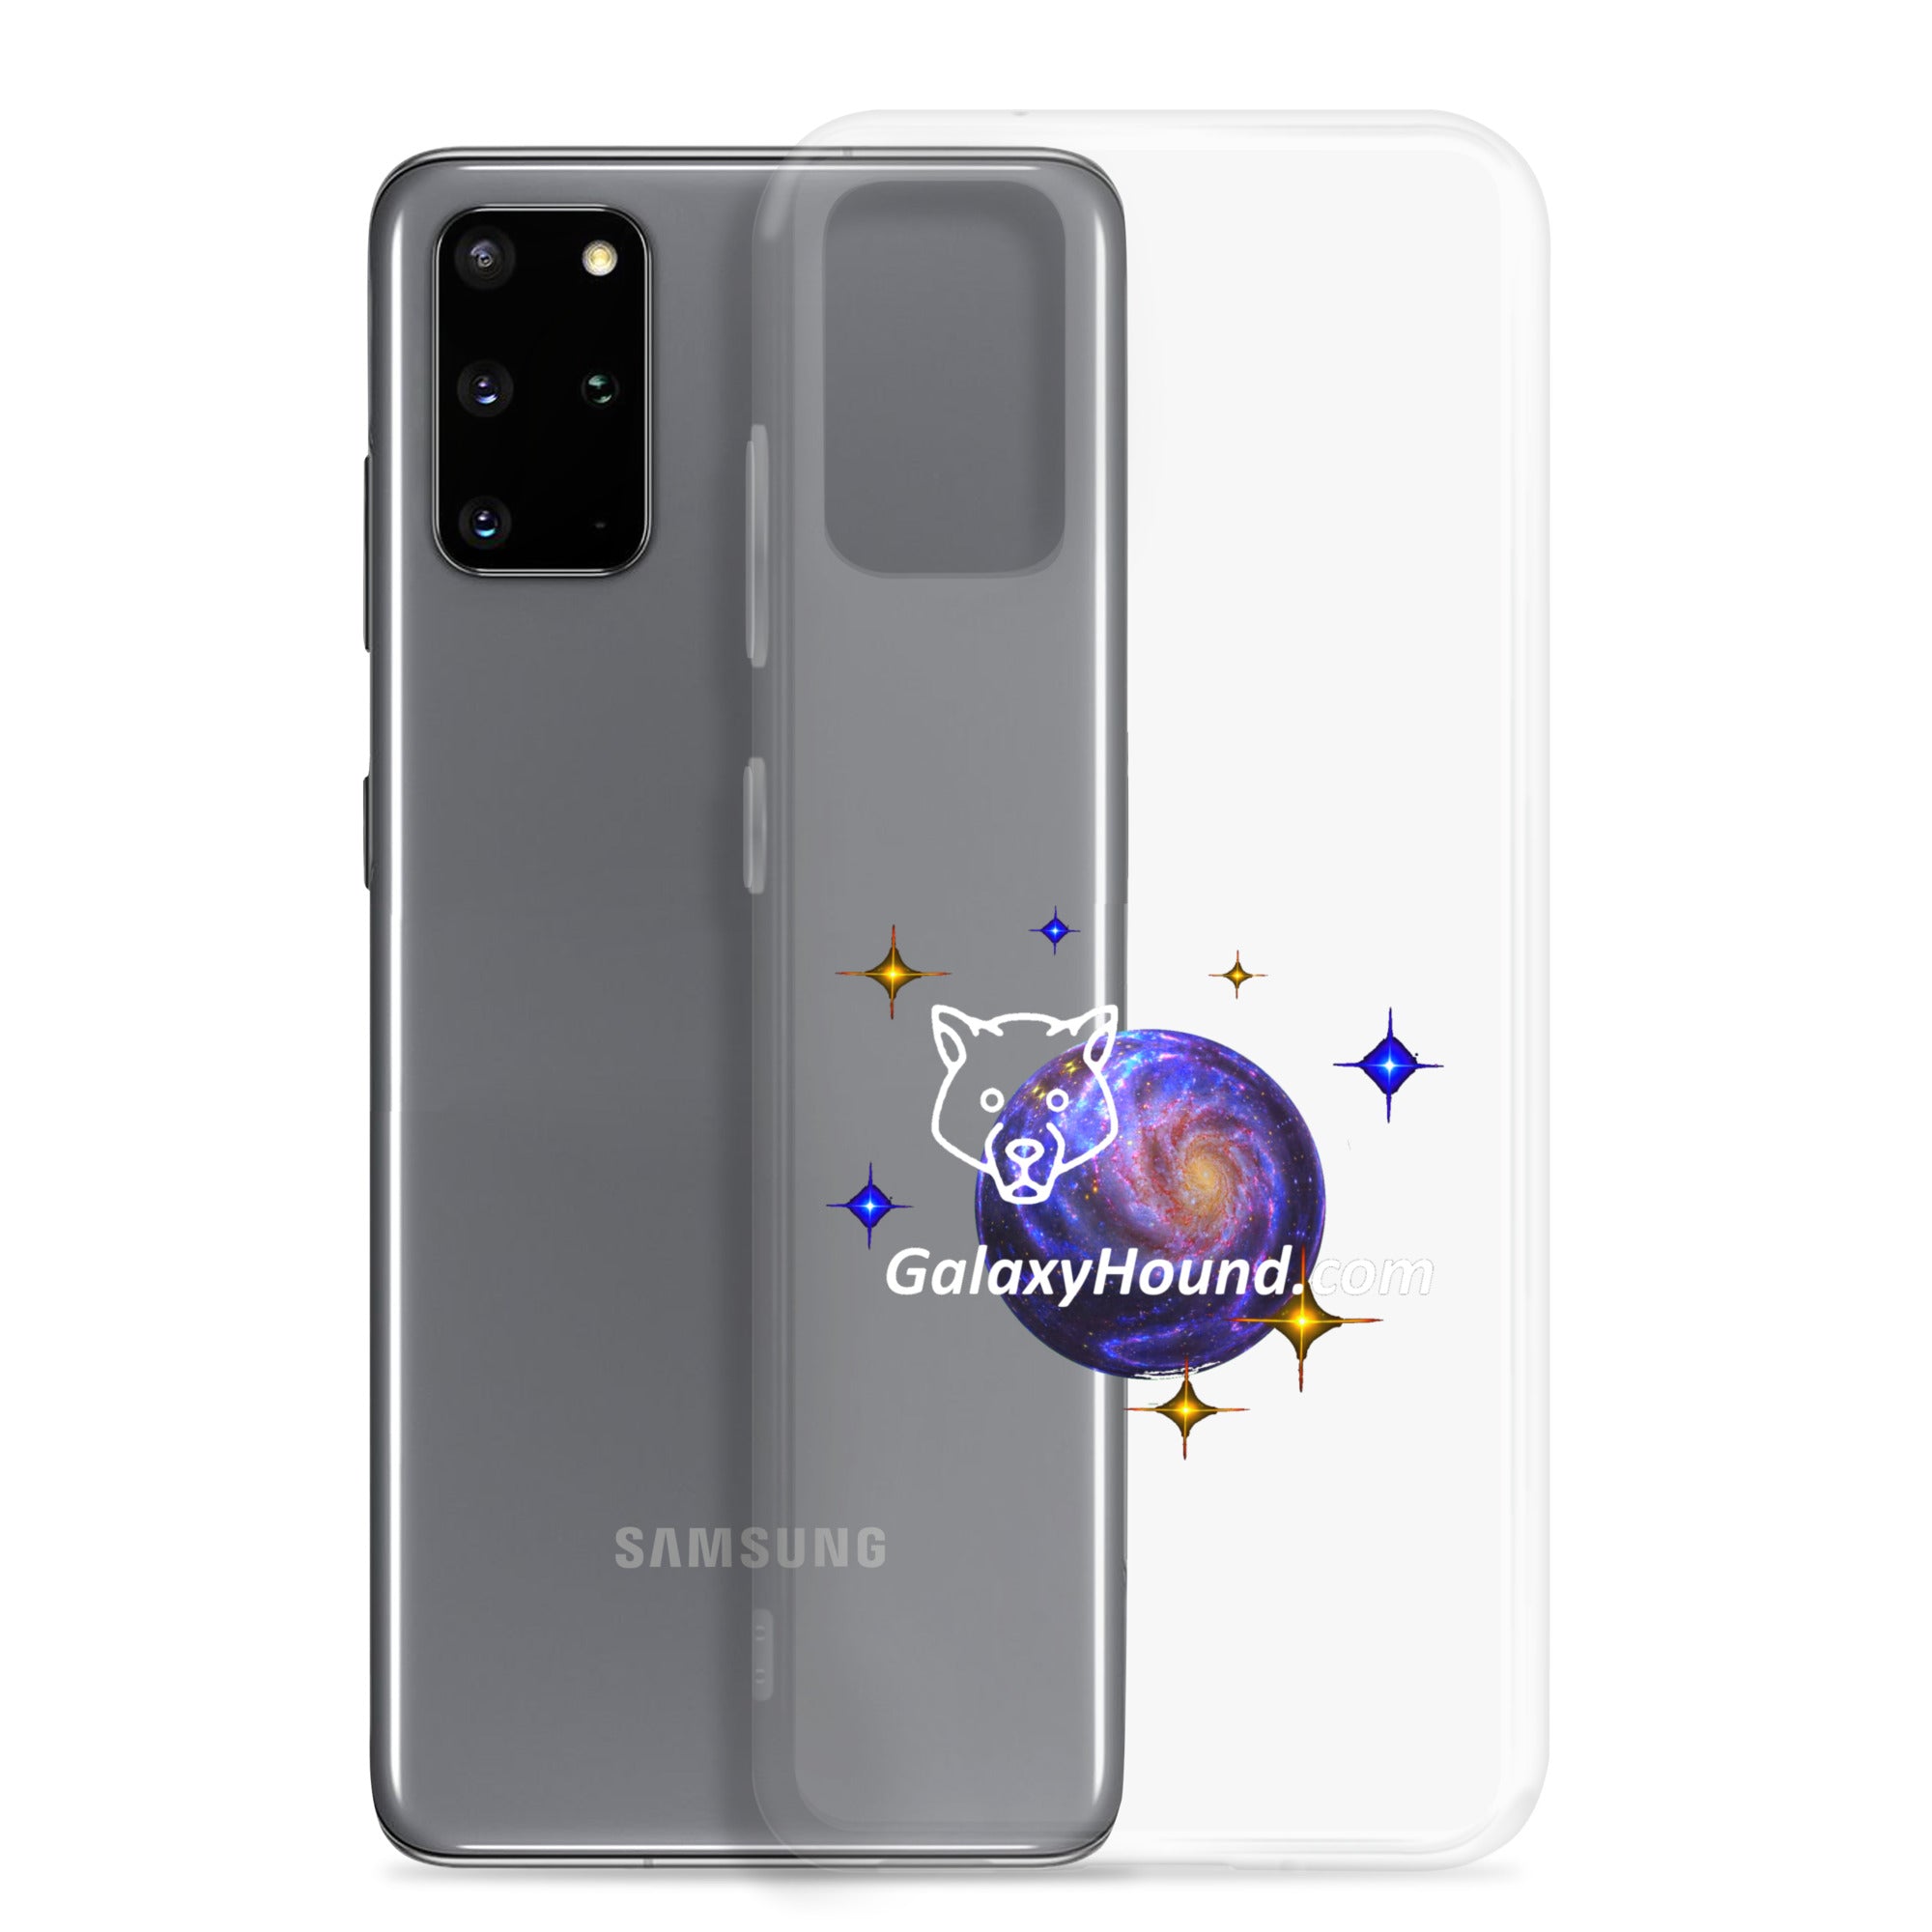 gh Samsung Case